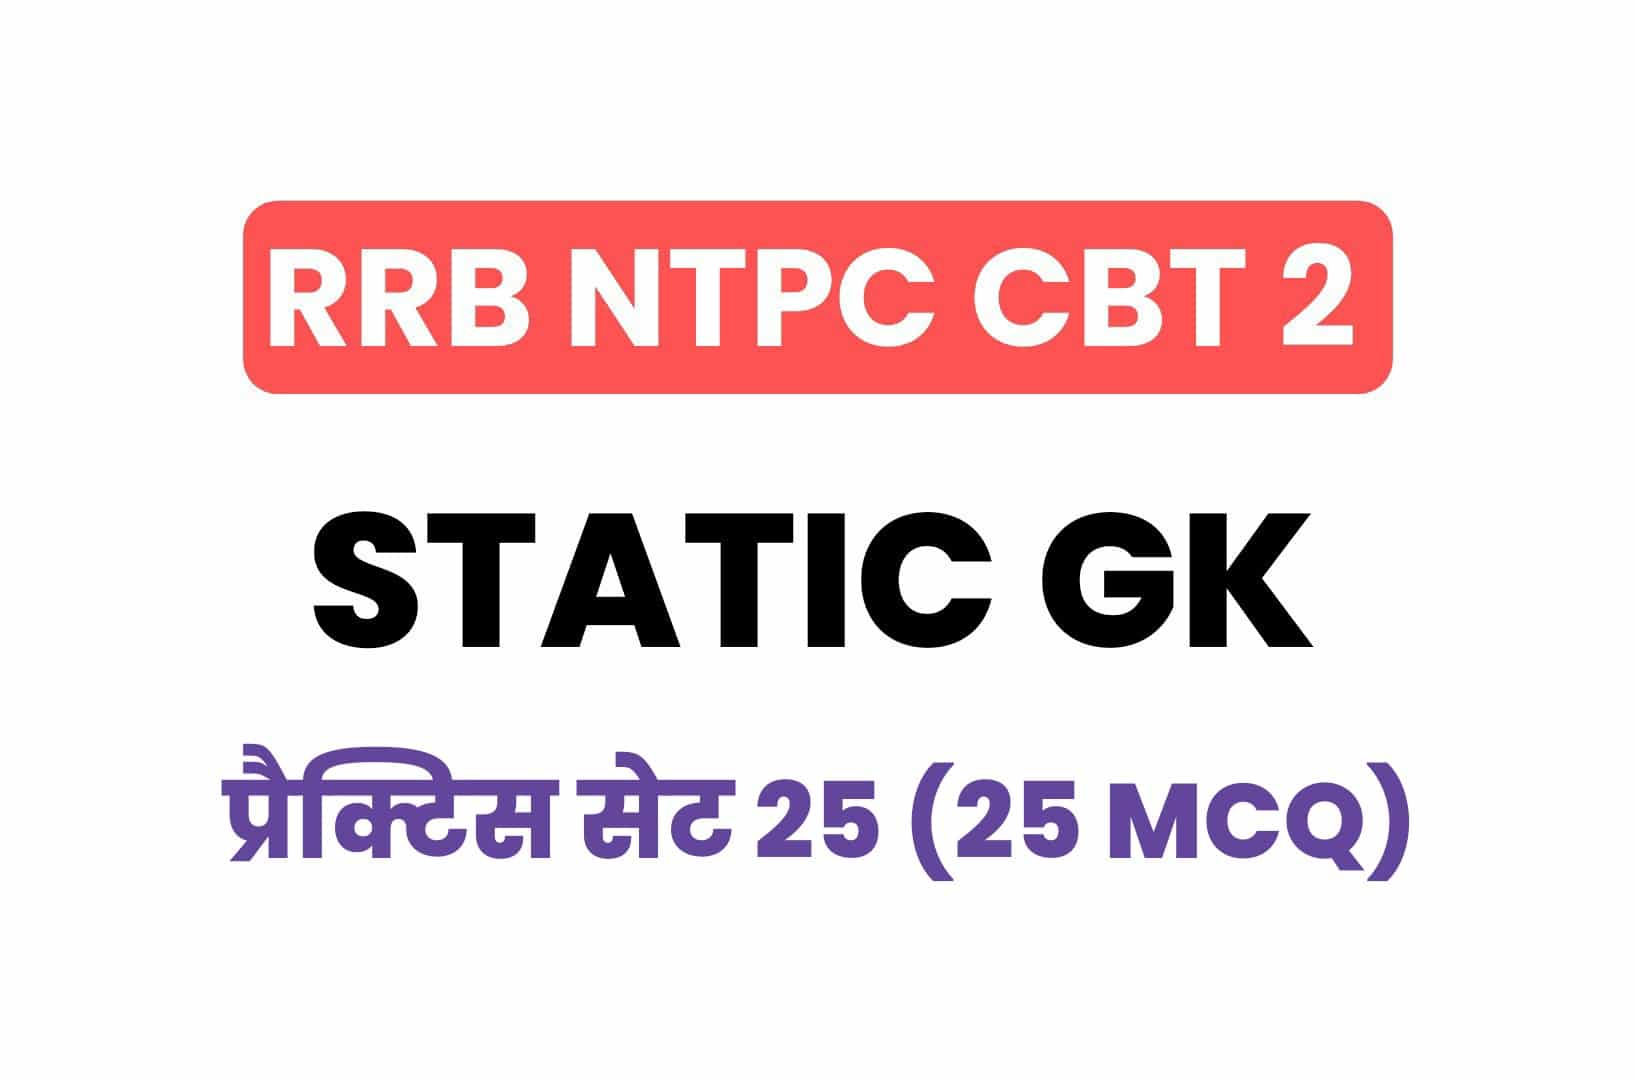 RRB NTPC CBT 2 Static GK प्रैक्टिस सेट 25: परीक्षा में पूछें गये महत्वपूर्ण 25 MCQ अवश्य पढ़ें